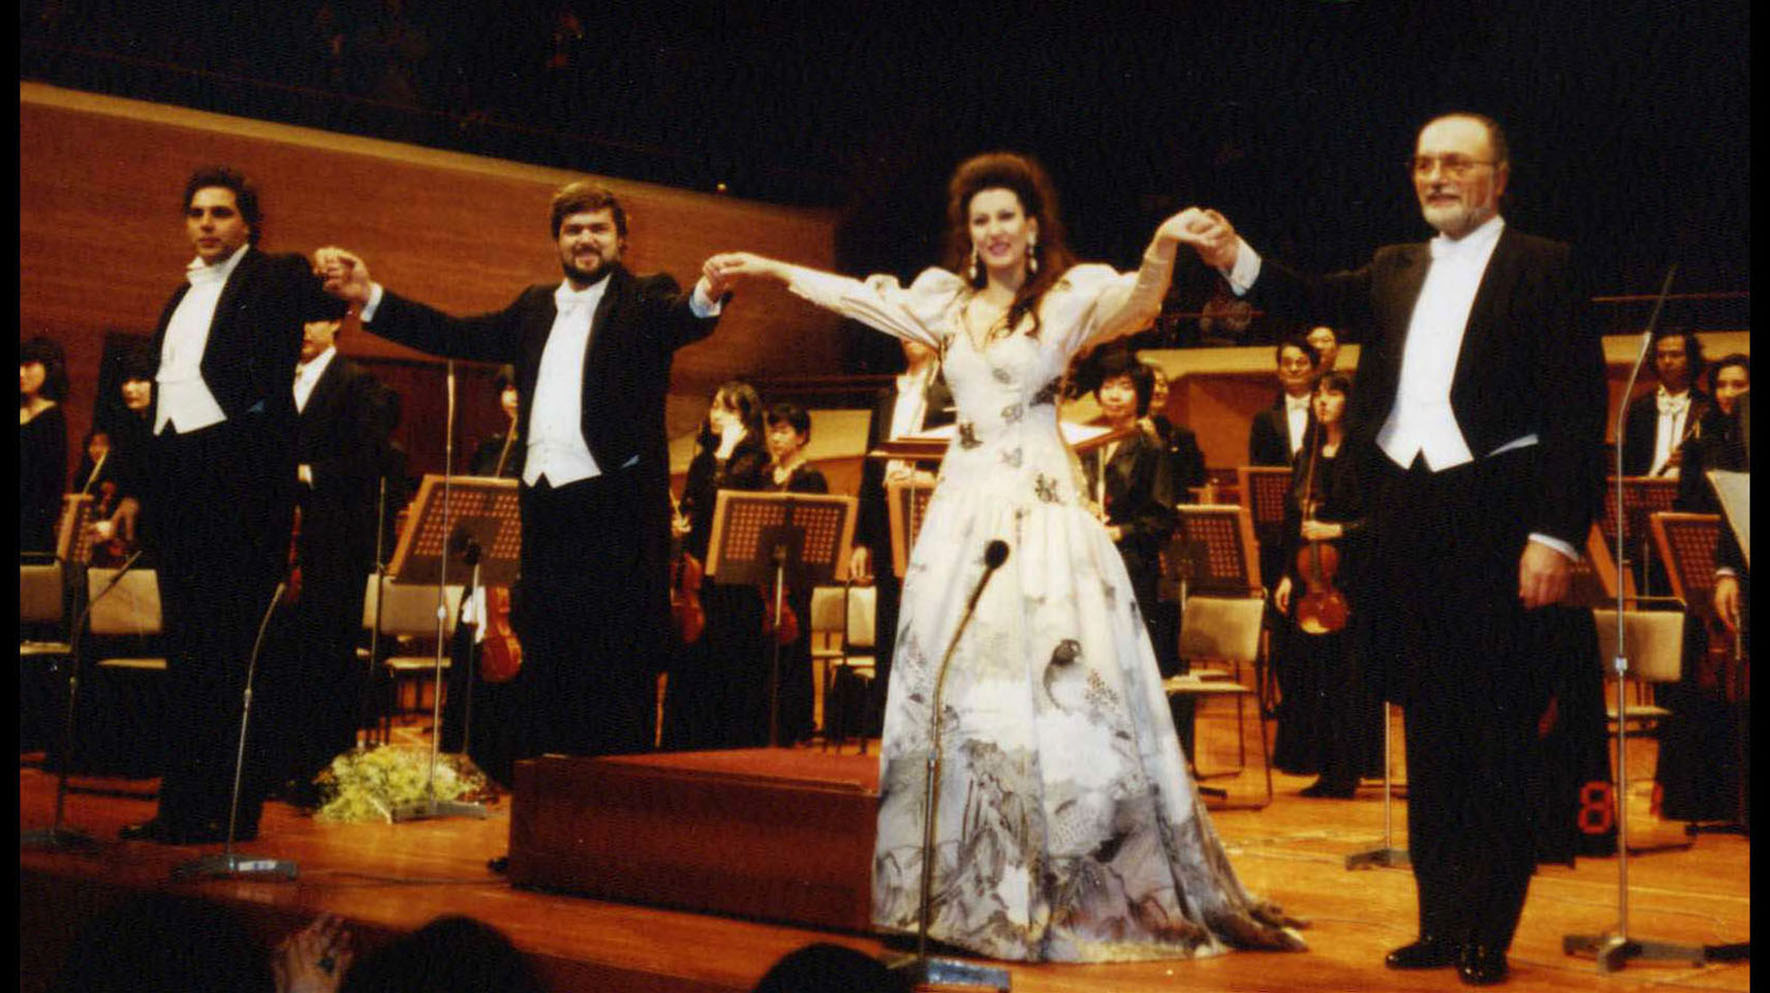 Lucia Aliberti with the conductor Roberto Paternostro⚘the tenor Peter Dvorsky⚘the baritone Renato Bruson⚘Suntory Hall⚘Tokyo⚘Opera⚘"La Traviata”⚘Live CD and TV Recording⚘Concert⚘On Stage⚘Photo taken from the TV⚘:http://www.luciaaliberti.it #luciaaliberti #peterdvorsky #renatobruson #robertopaternostro #suntoryhall #tokyo #latraviata #opera #livecdrecording #livetvrecording #onstage #hanaemorifashion